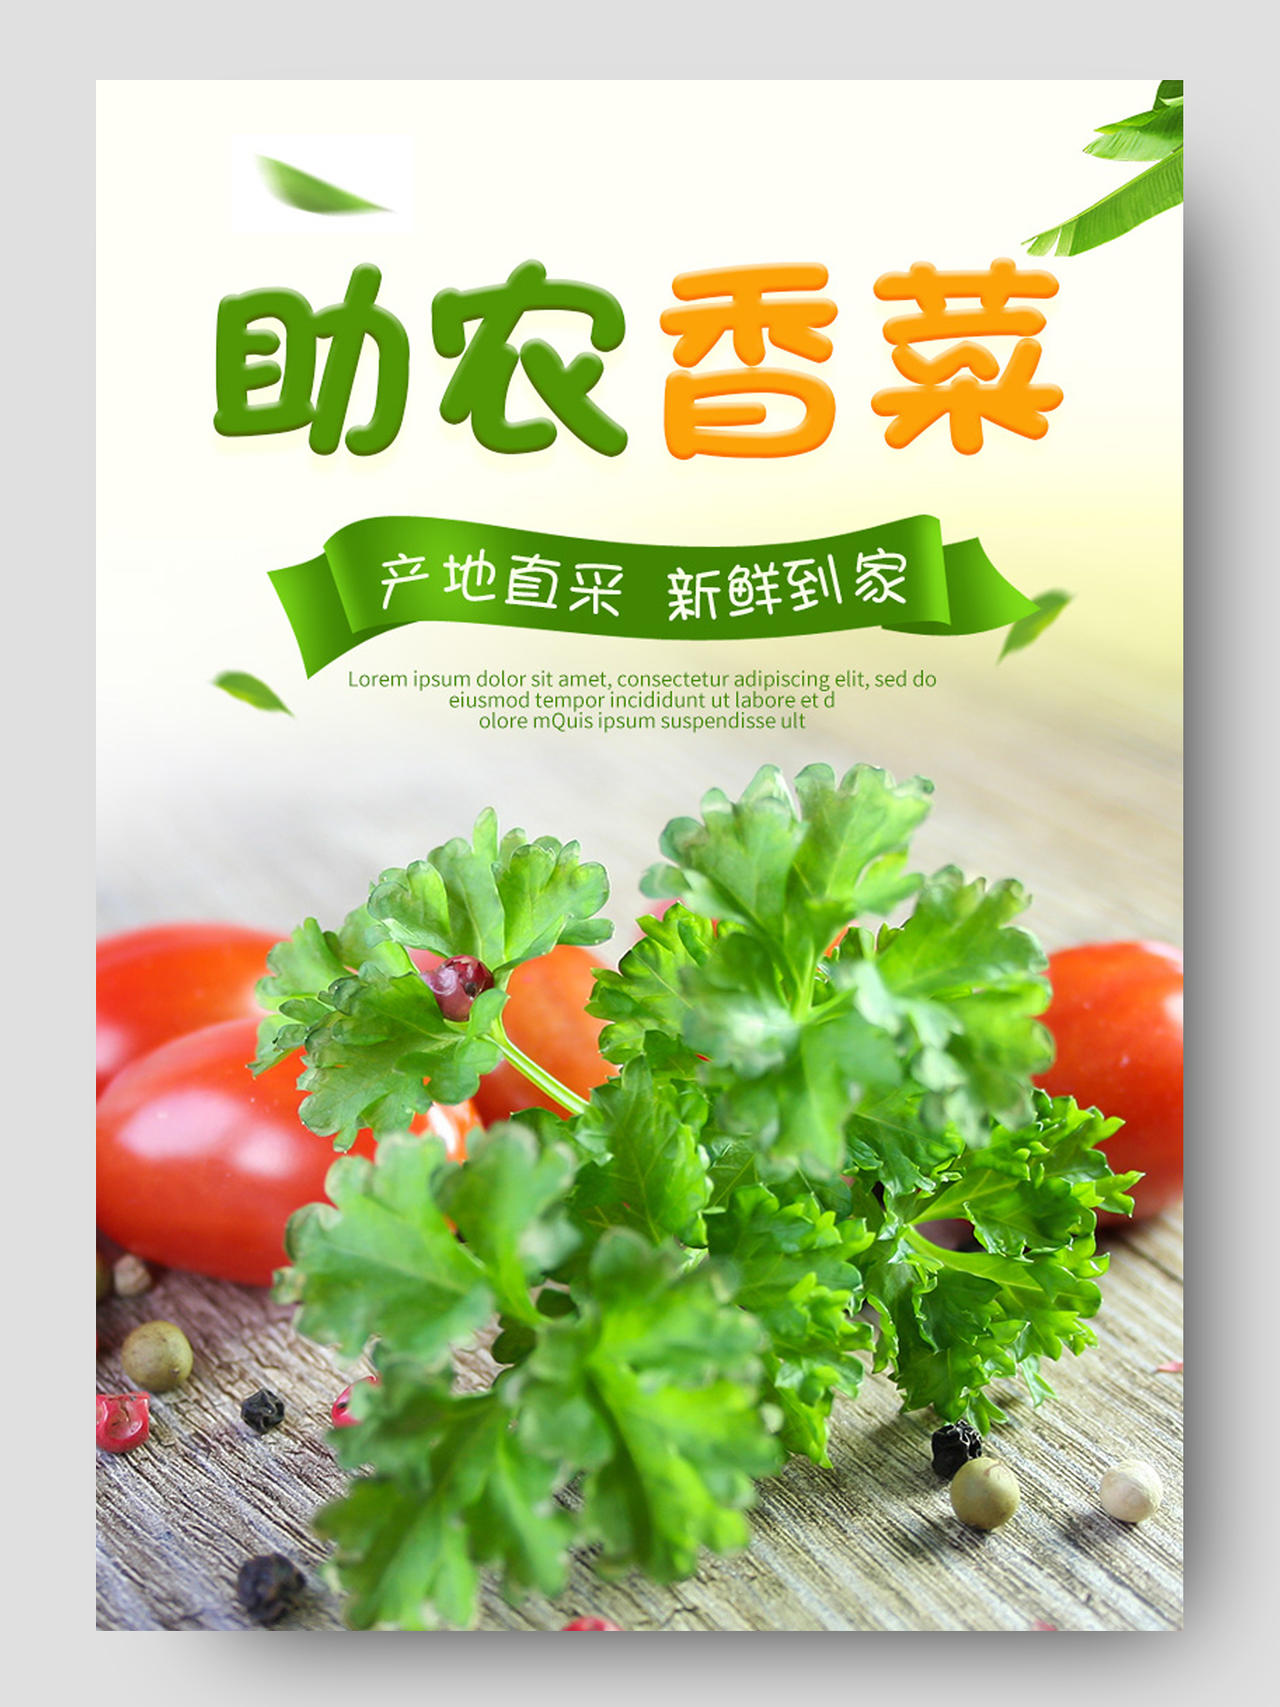 电商绿色淘宝香菜详情蔬菜模板节假日促销果蔬